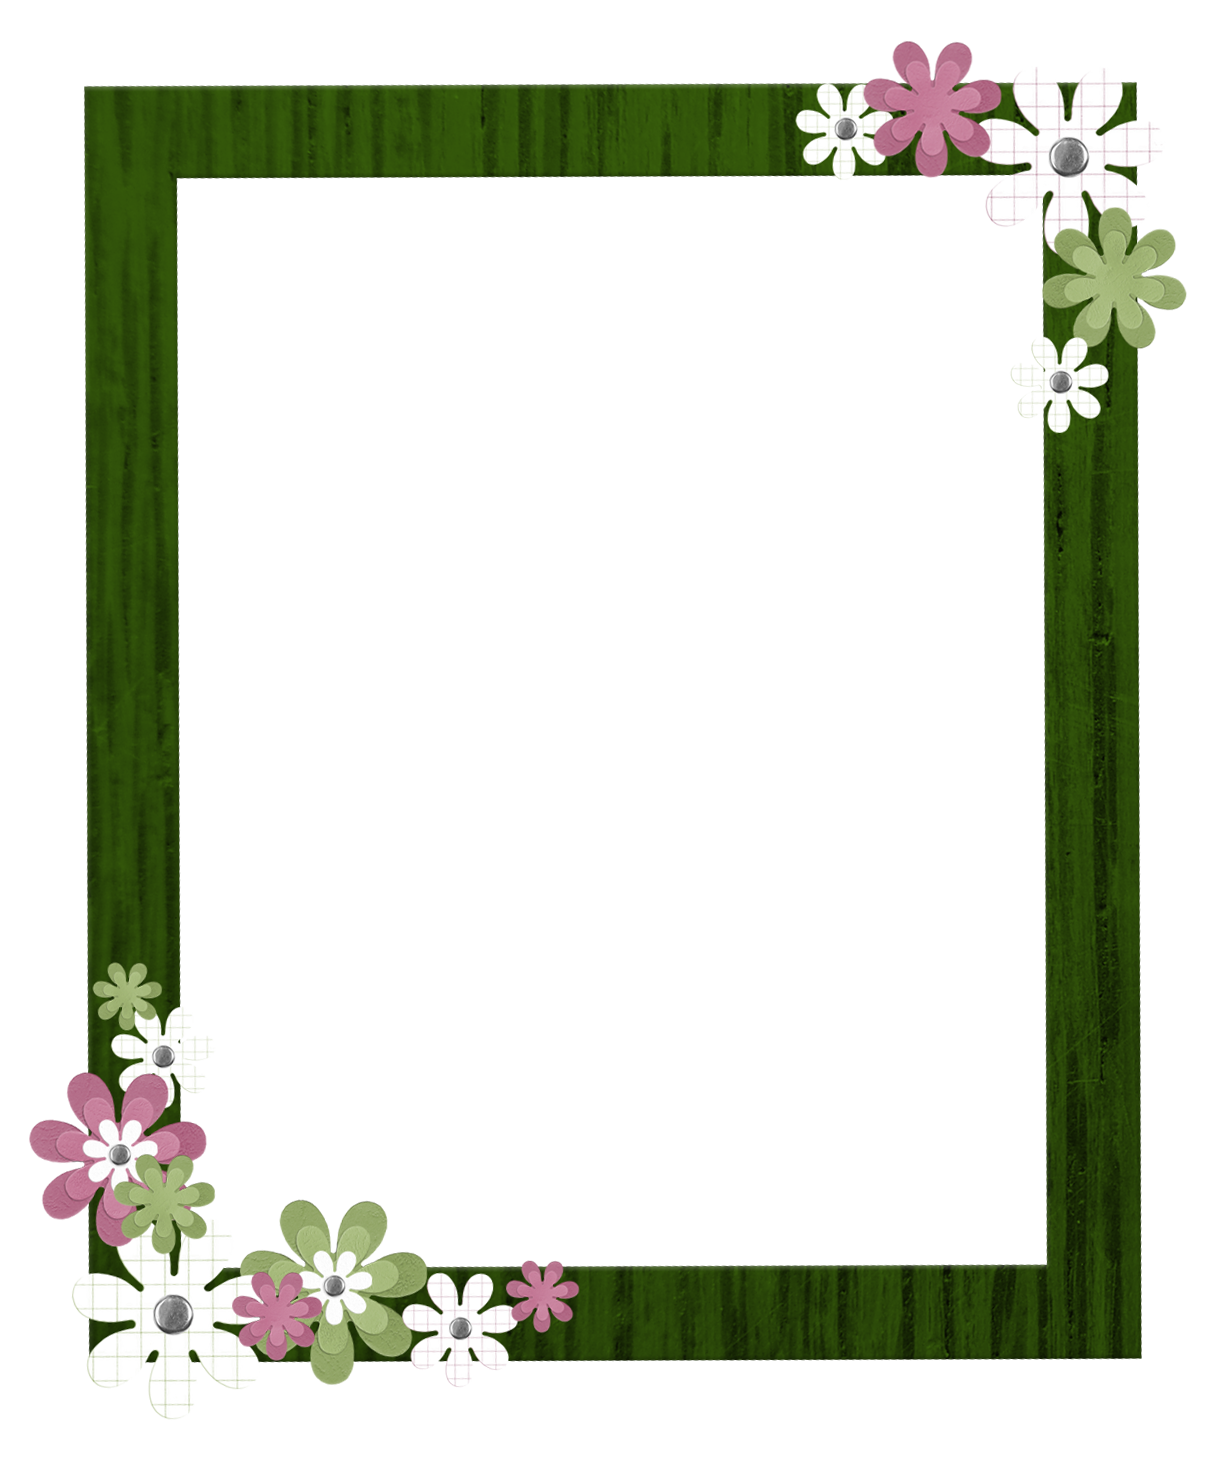 Download PNG image - Square Flower Border Frame PNG Image 